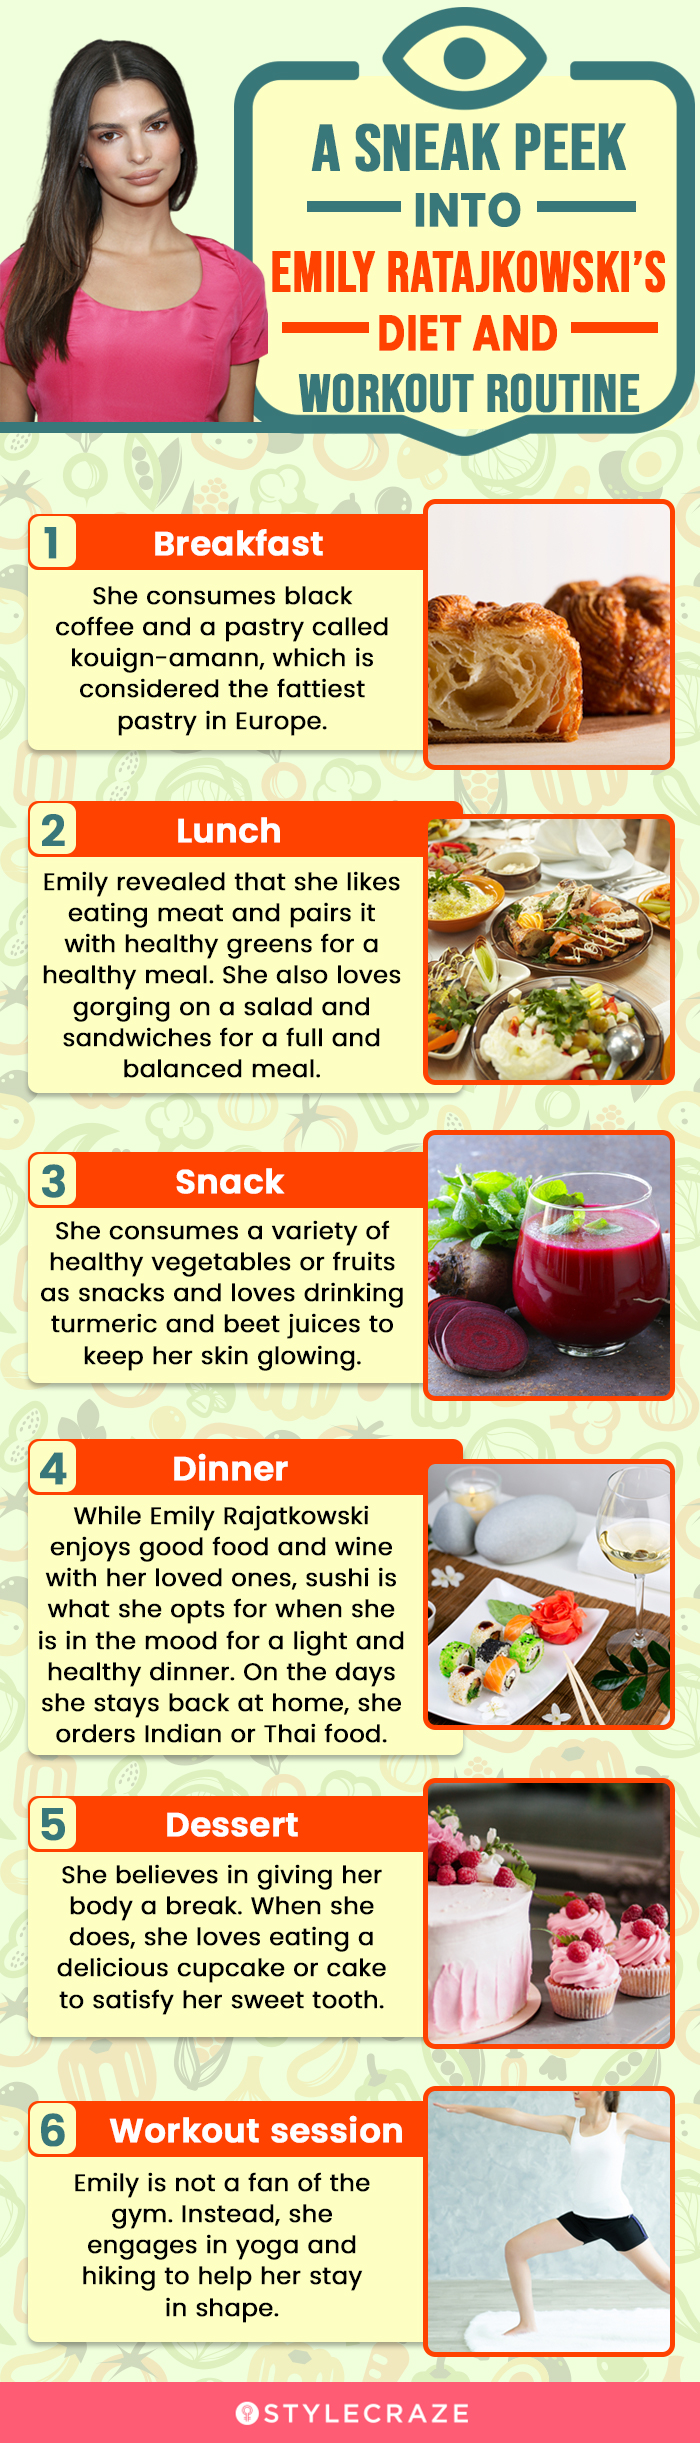 a sneak peek into emily ratajkowski’s diet and workout routine [infographic]